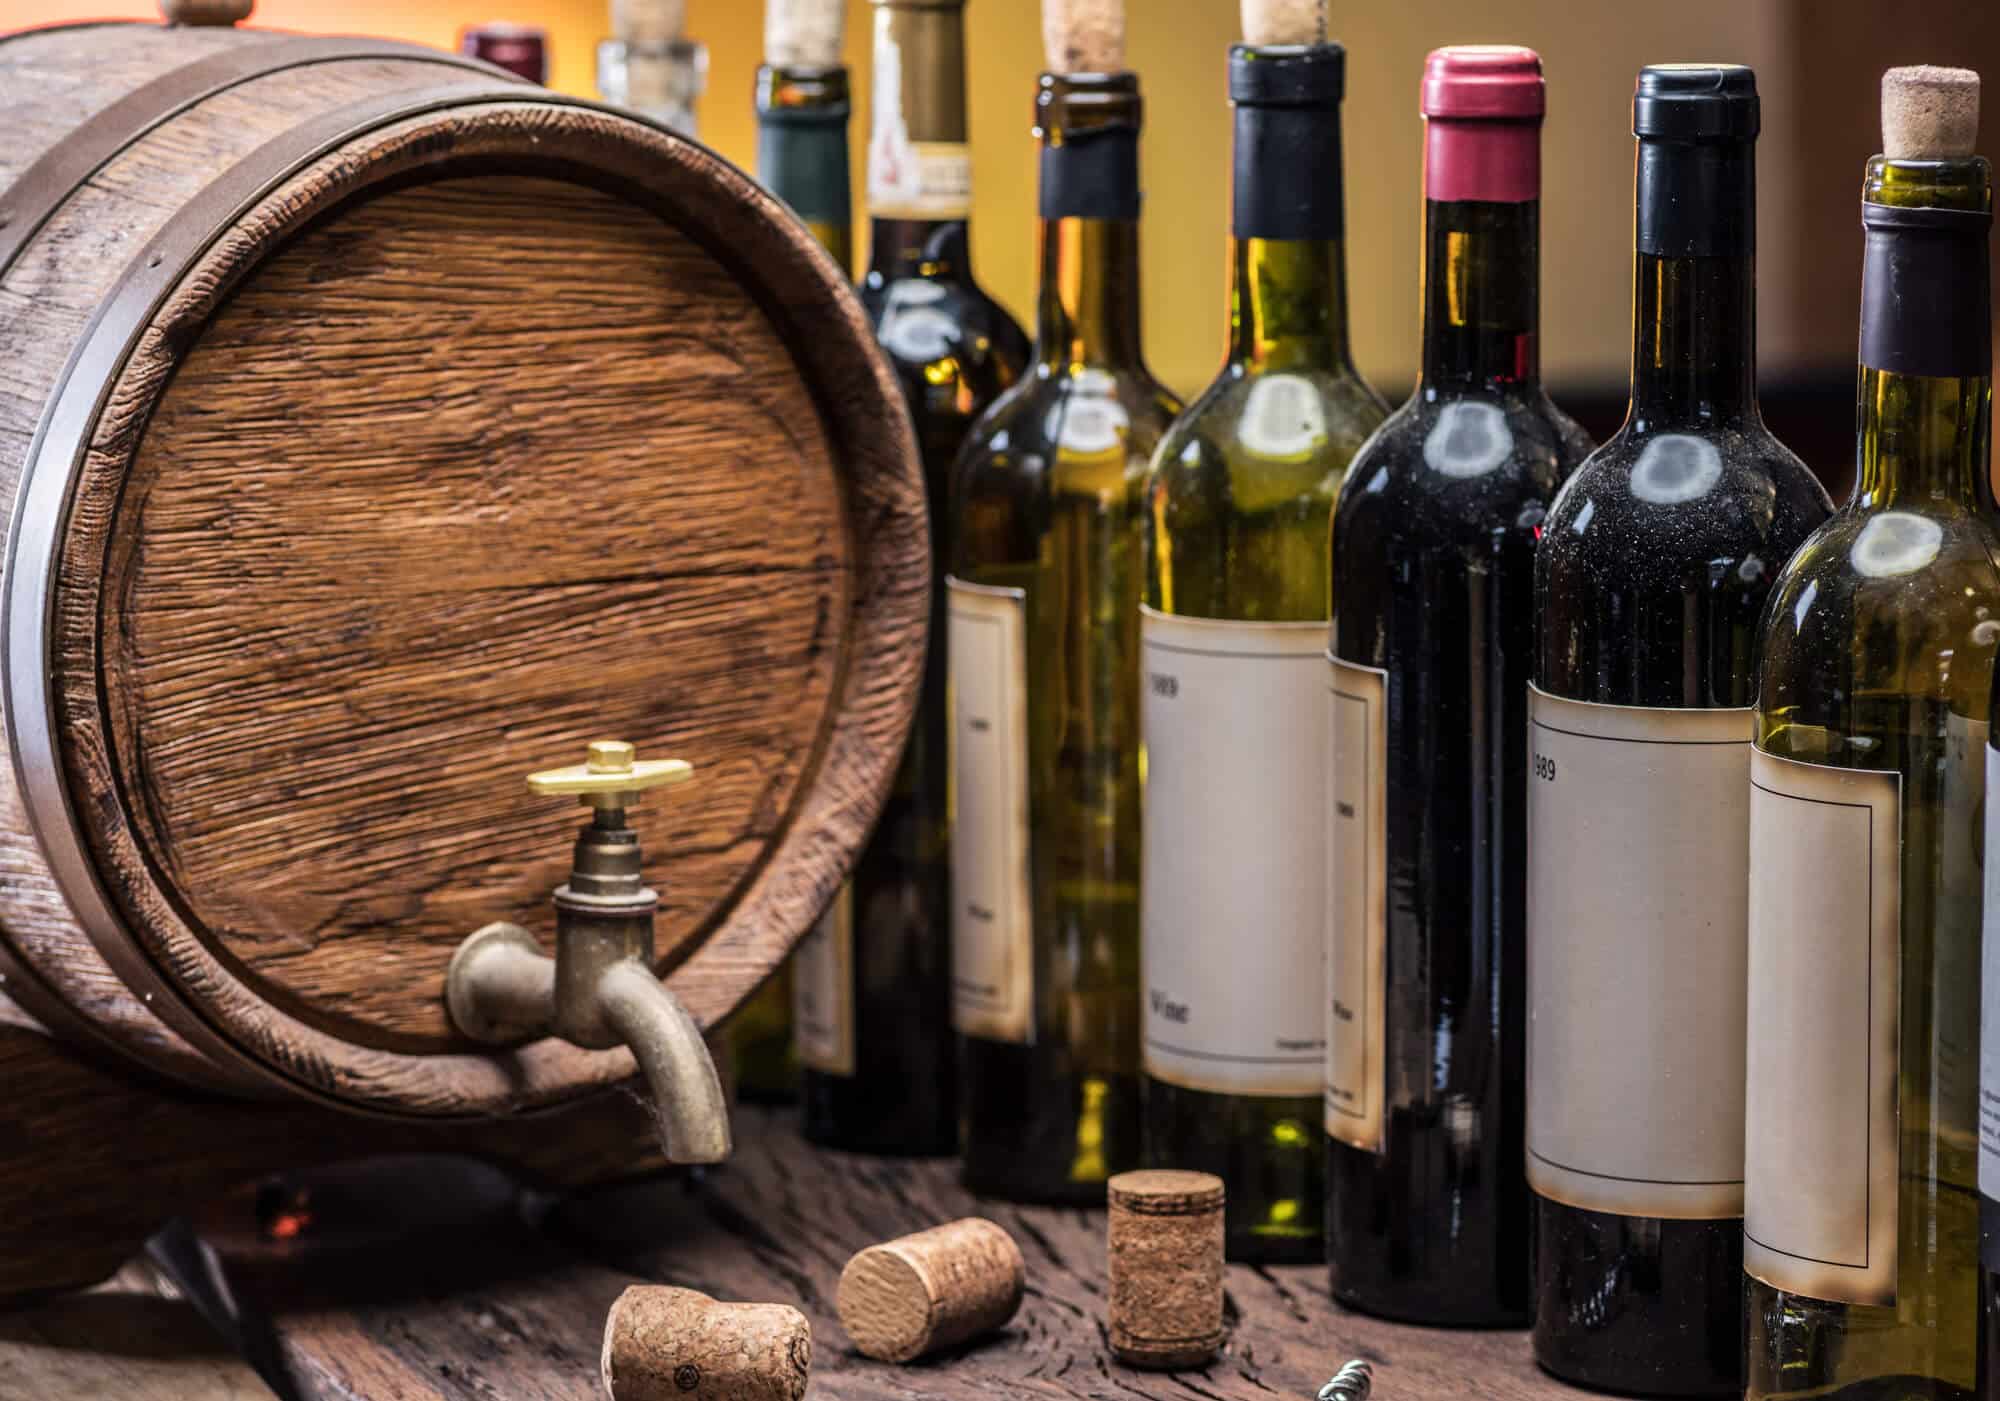 בקבוקי יין וחבית יין עשויה עץ אלון.  <a href="https://depositphotos.com. ">איור: depositphotos.com</a>